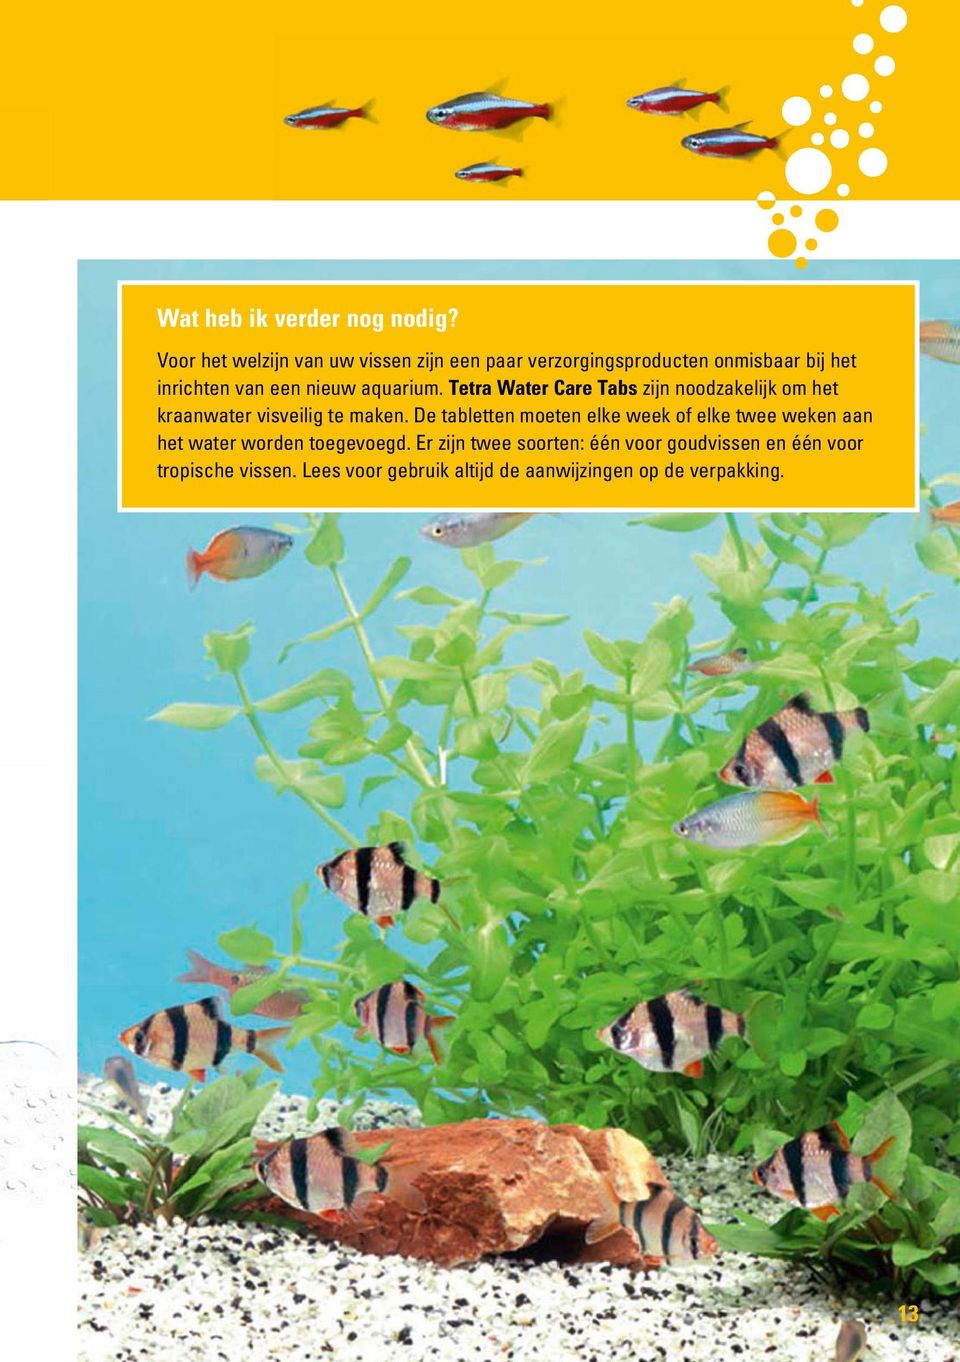 aquarium. Tetra Water Care Tabs zijn noodzakelijk om het kraanwater visveilig te maken.